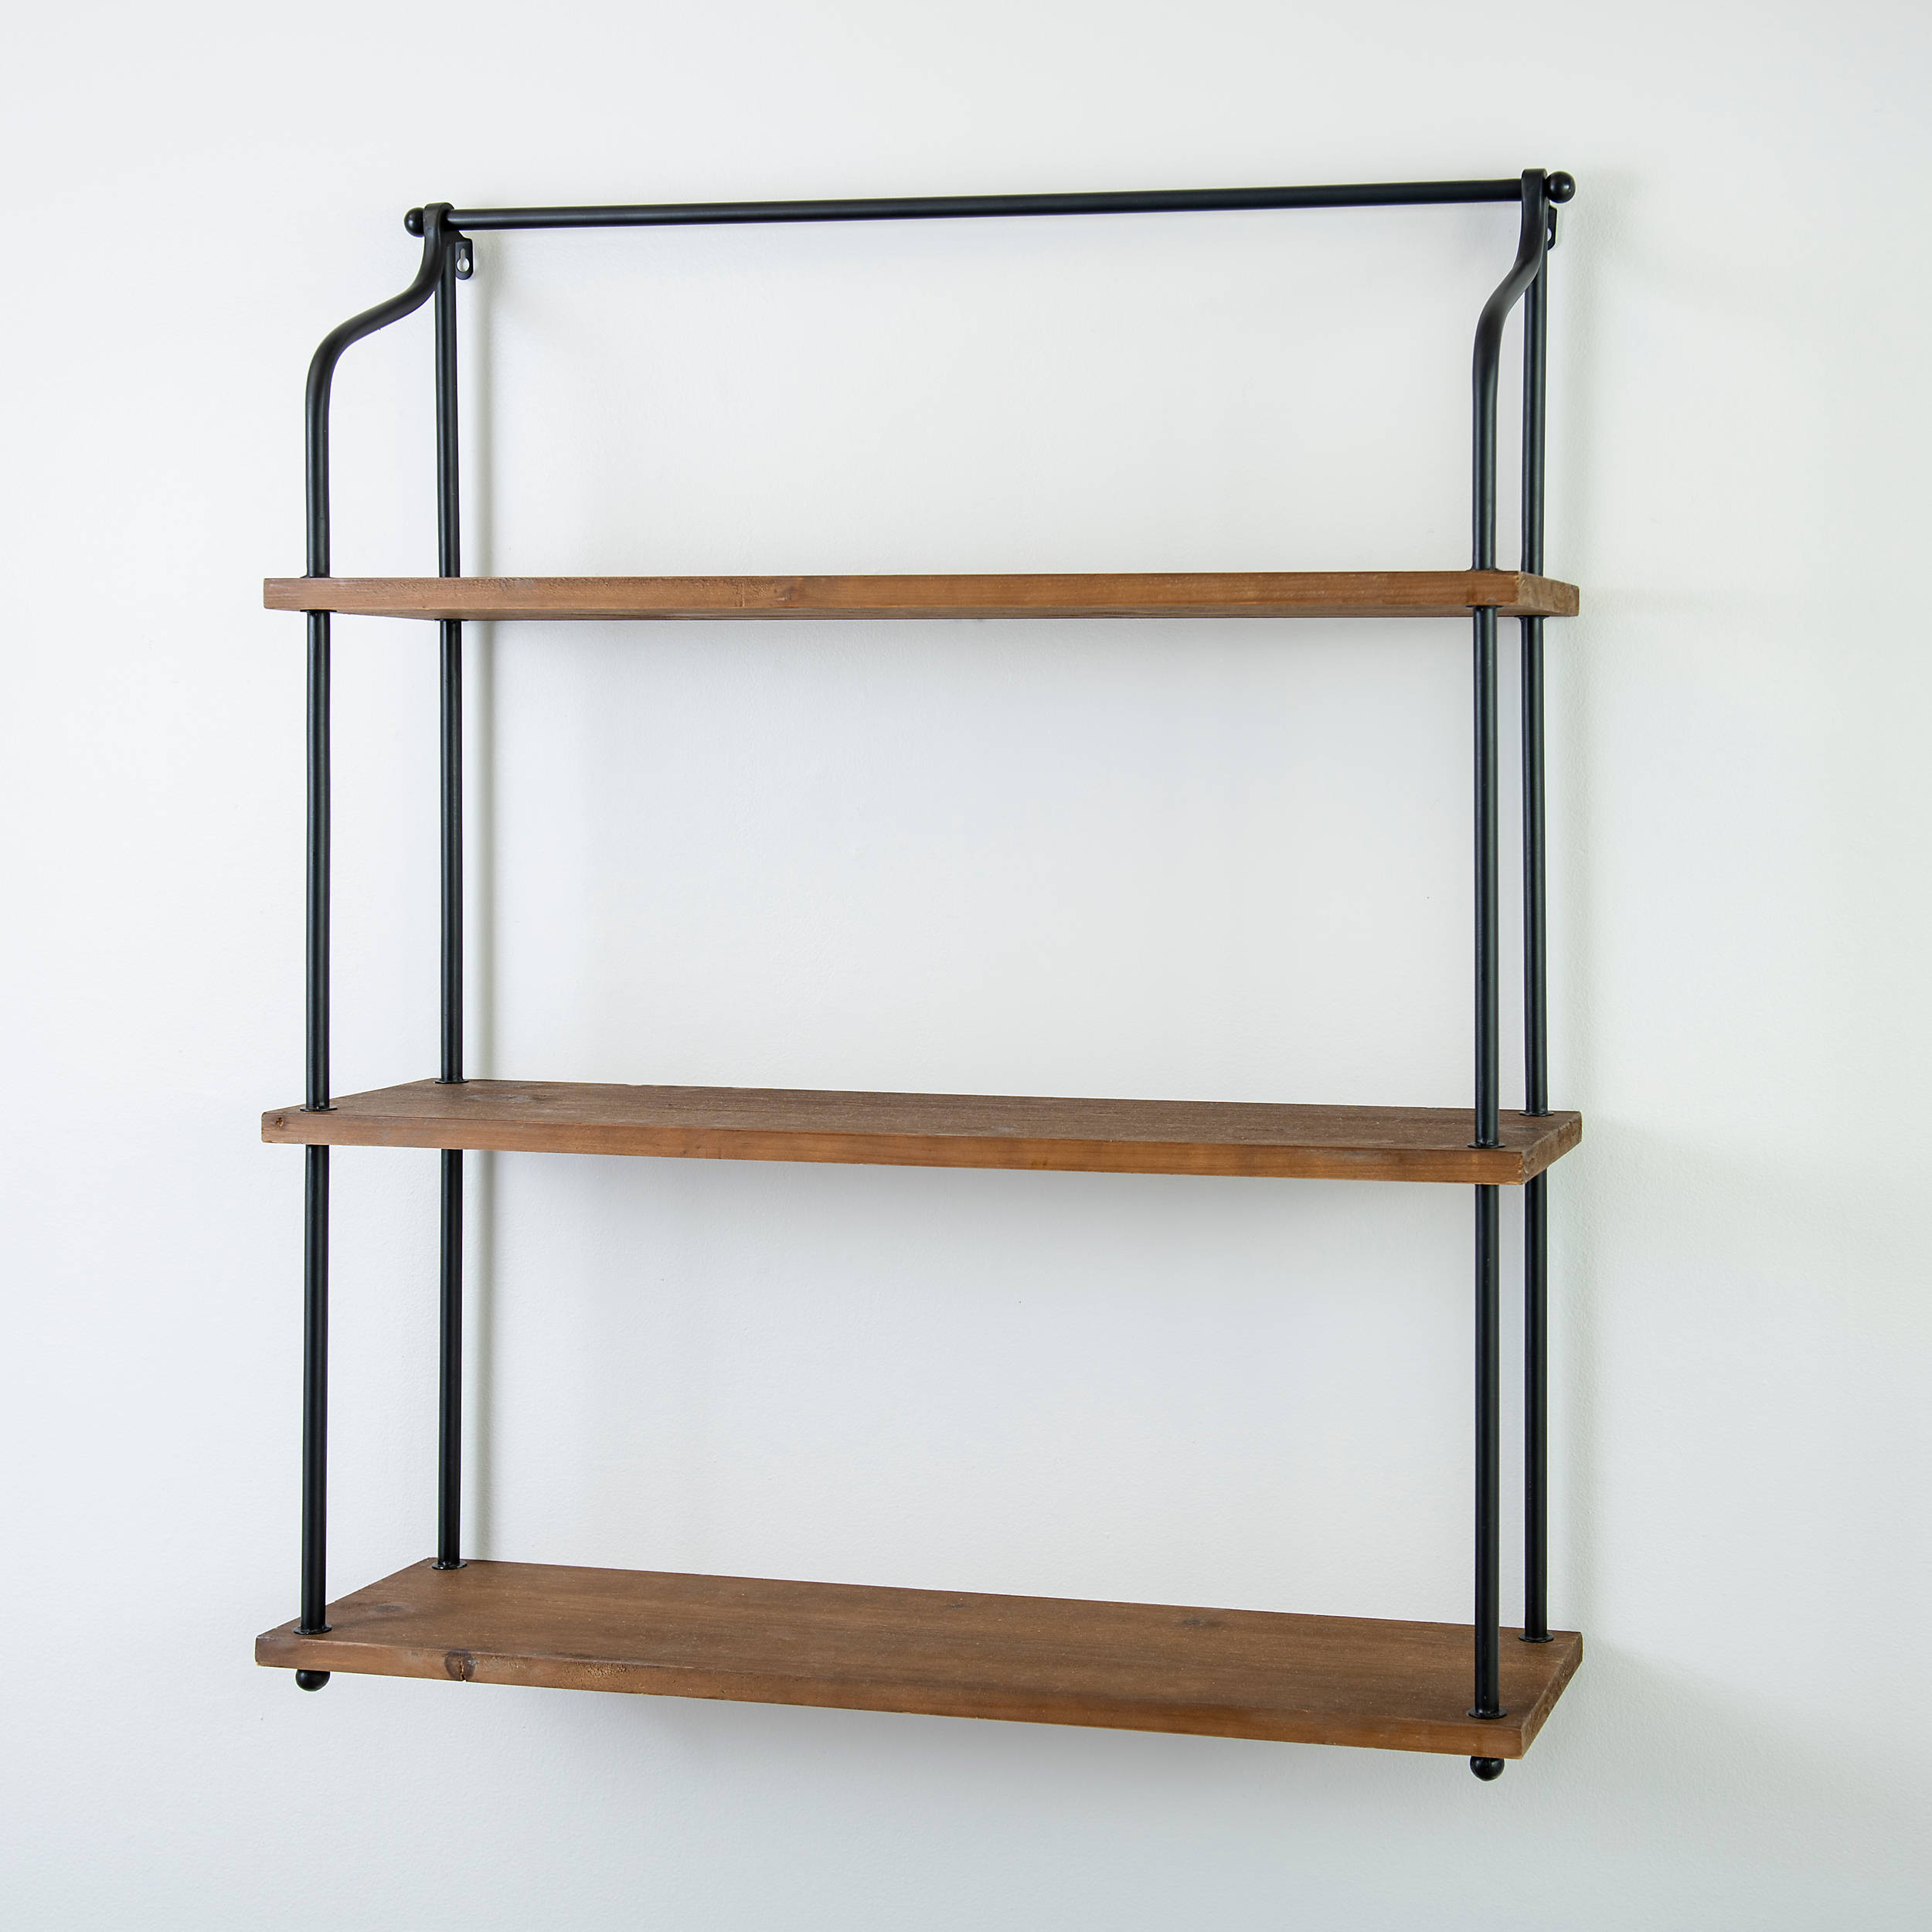 3 Tier Shelf Wall Hanging Shelves Black Metal Frame Wooden Shelves Storage Decor 